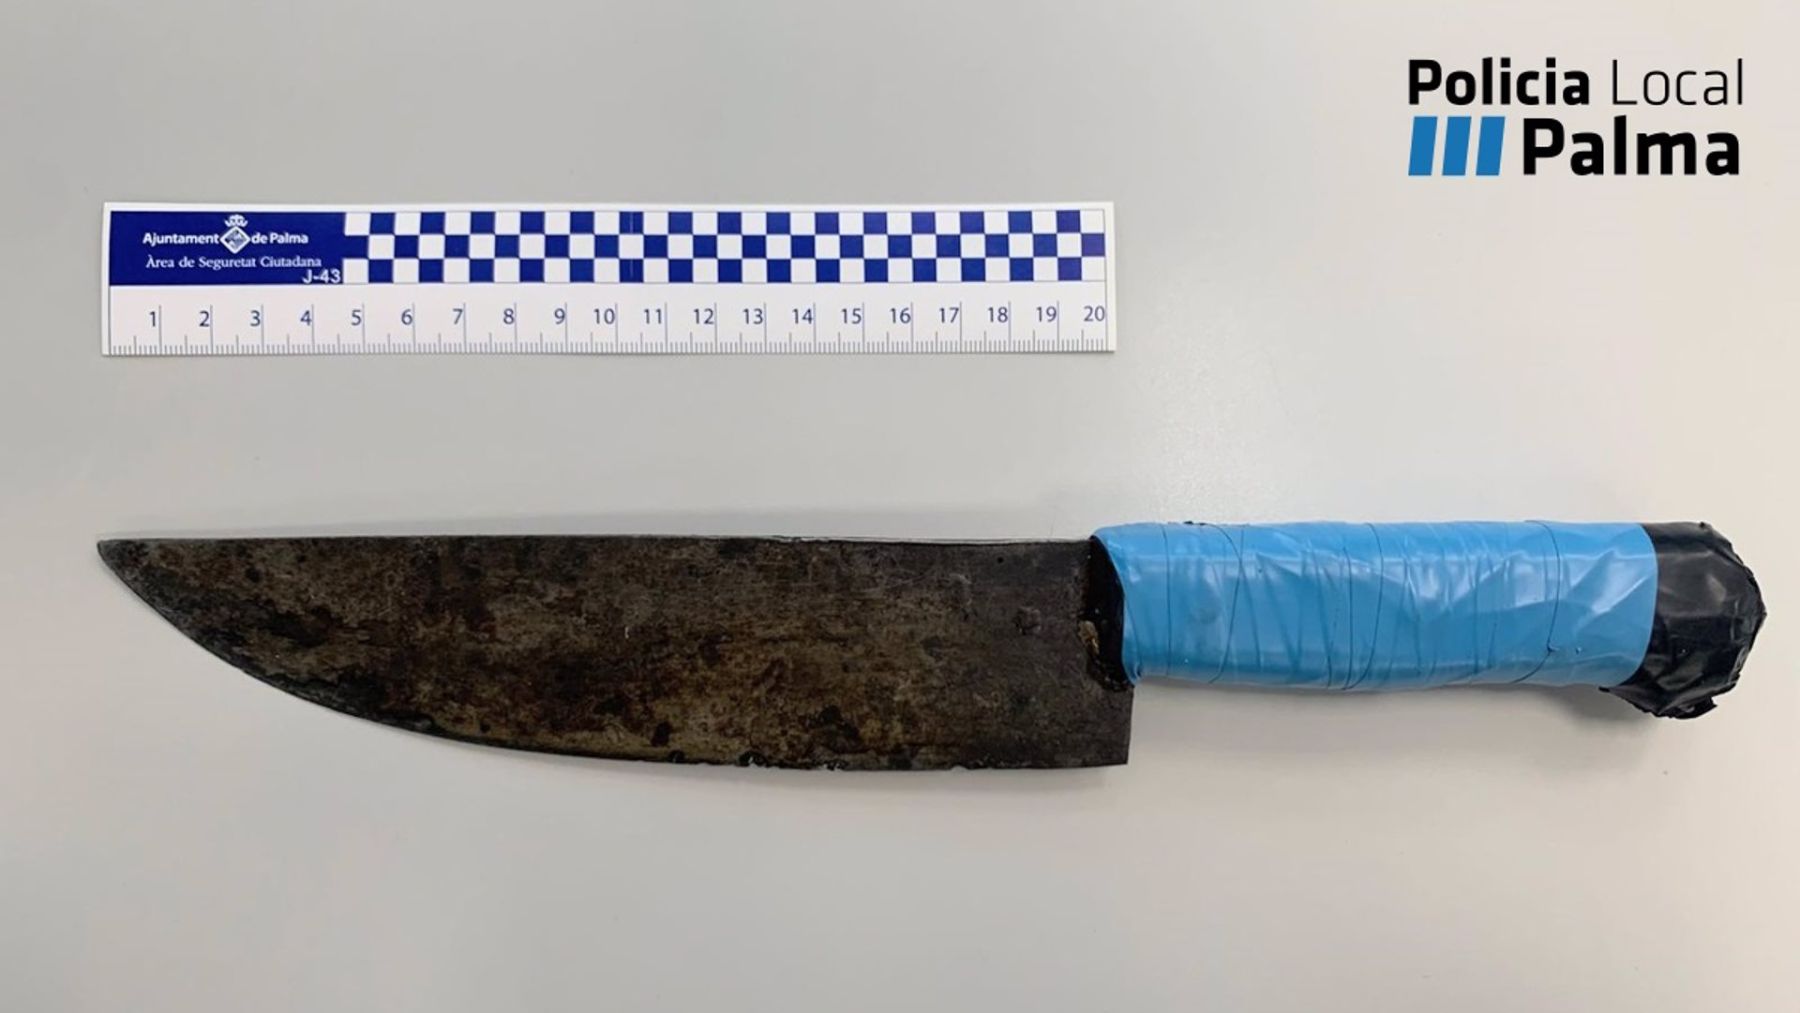 Imagen del cuchillo con el que el detenido habría amenazado a su pareja.